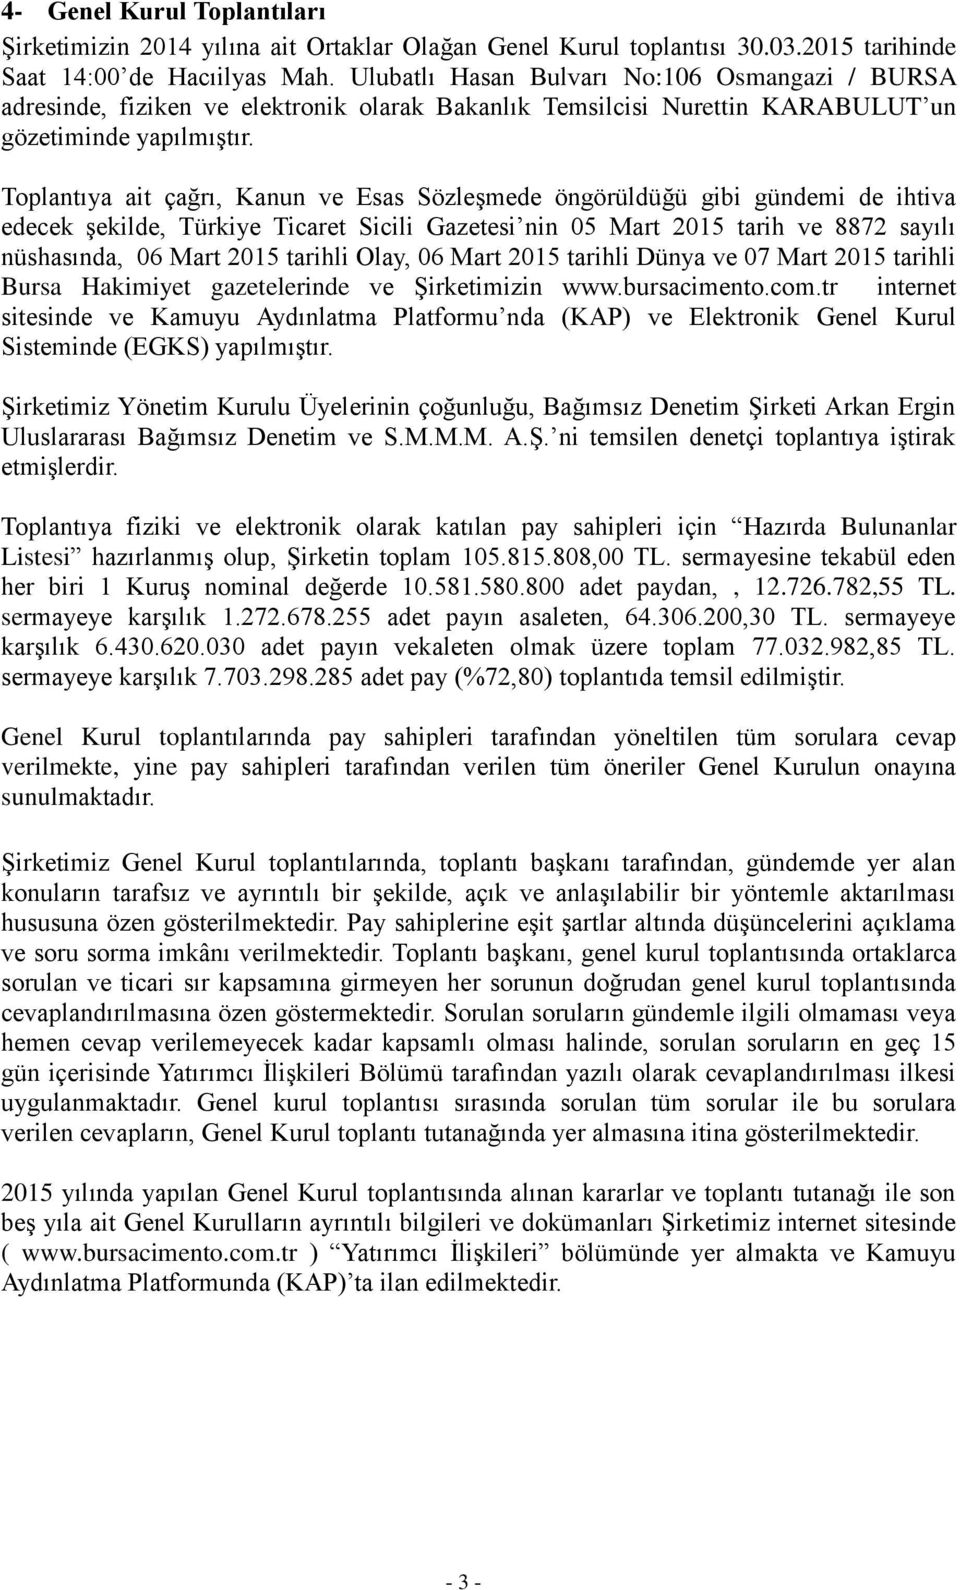 Toplantıya ait çağrı, Kanun ve Esas Sözleşmede öngörüldüğü gibi gündemi de ihtiva edecek şekilde, Türkiye Ticaret Sicili Gazetesi nin 05 Mart 2015 tarih ve 8872 sayılı nüshasında, 06 Mart 2015